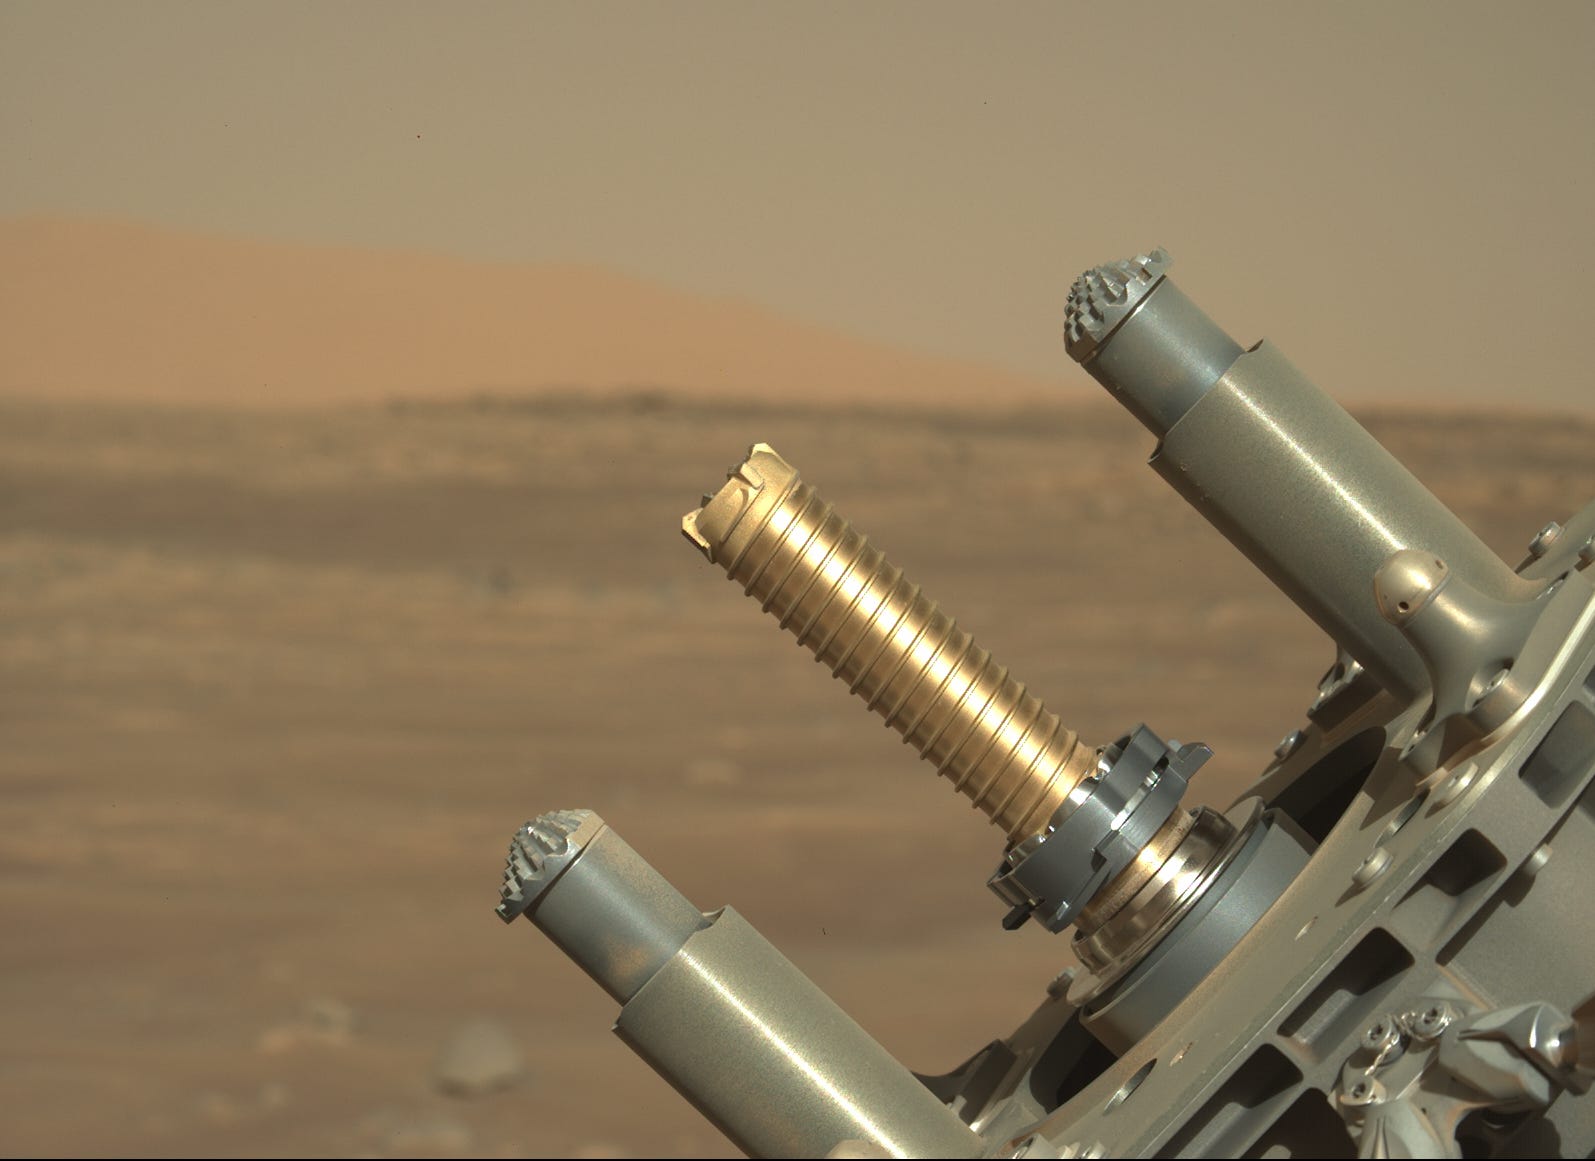 Der Roboterarm des Perseverance Rover hält ein goldenes Rohr zum Entkernen von Proben vor dem Hintergrund der Marsebene hoch